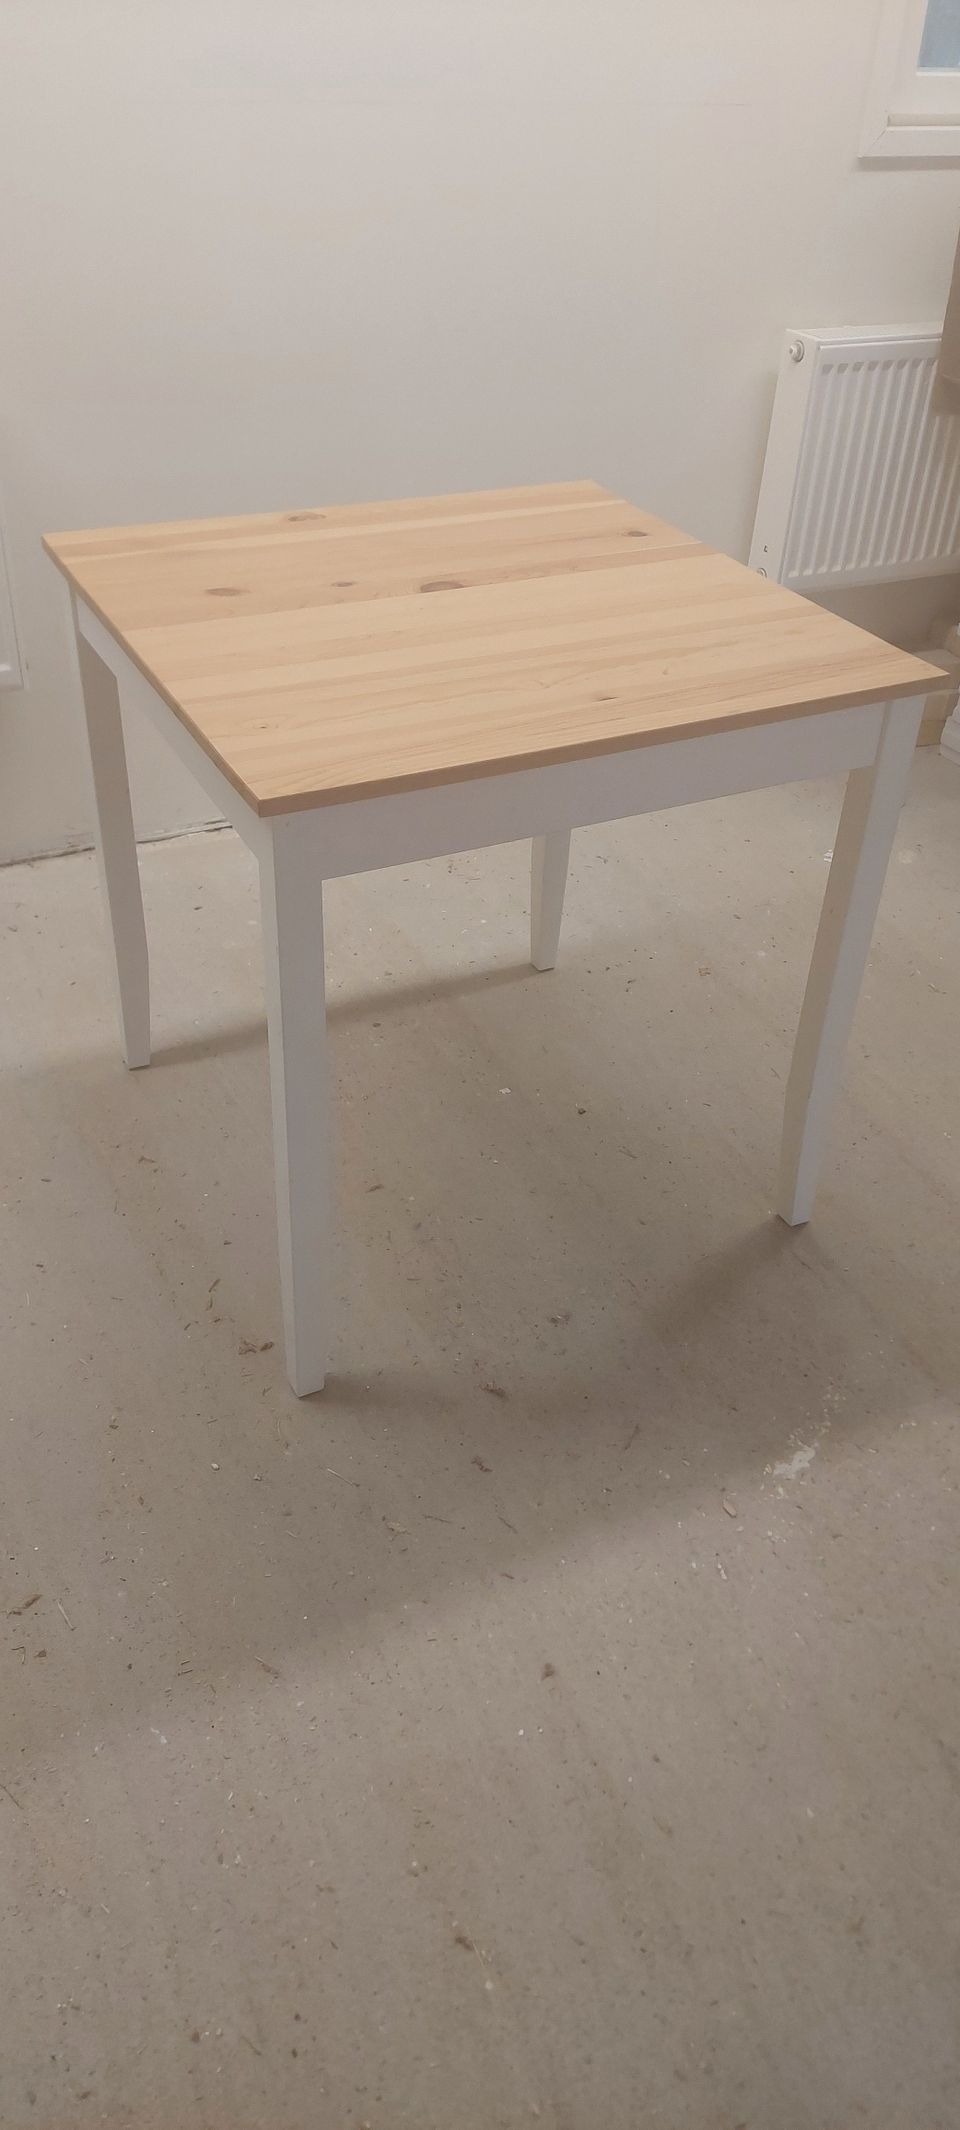 2h Ikean ruokapöytä 74x74cm, hyvänkuntoinen